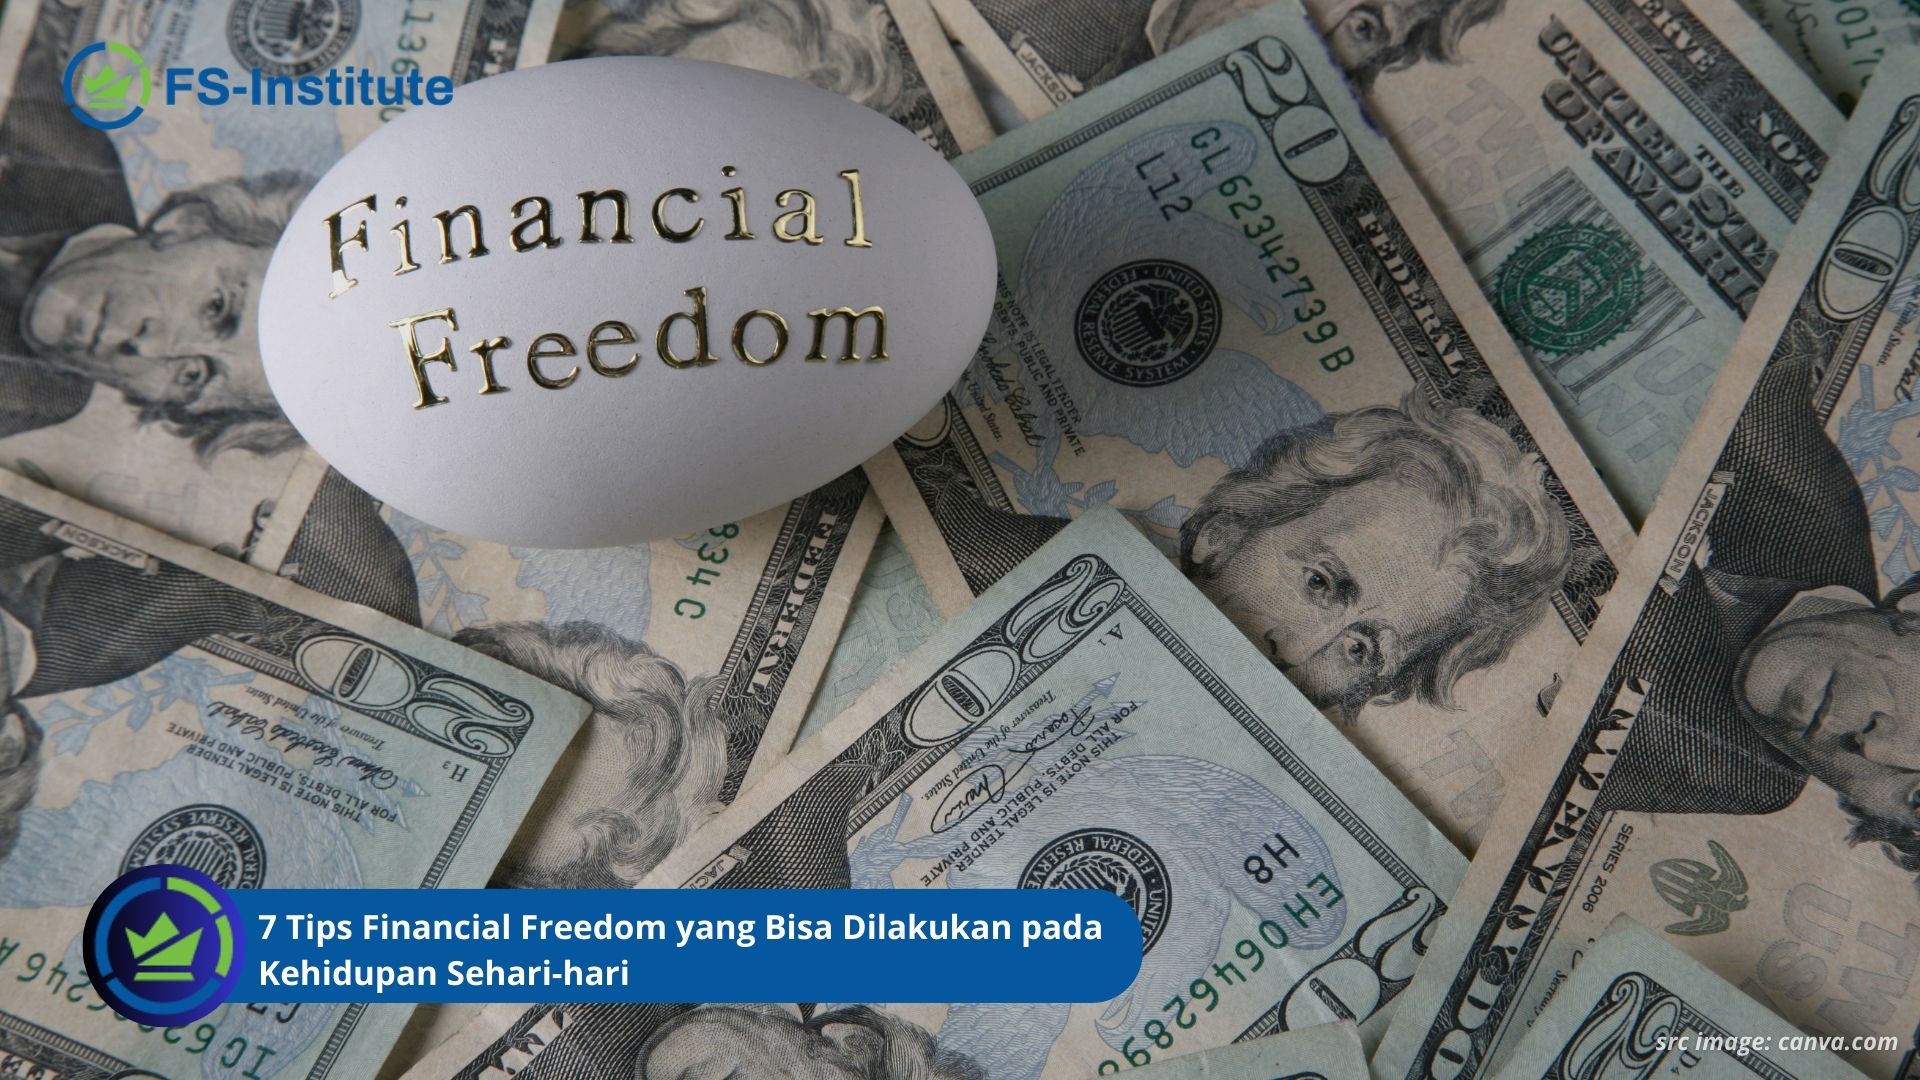 7 Tips Financial Freedom yang Bisa Dilakukan pada Kehidupan Sehari-hari